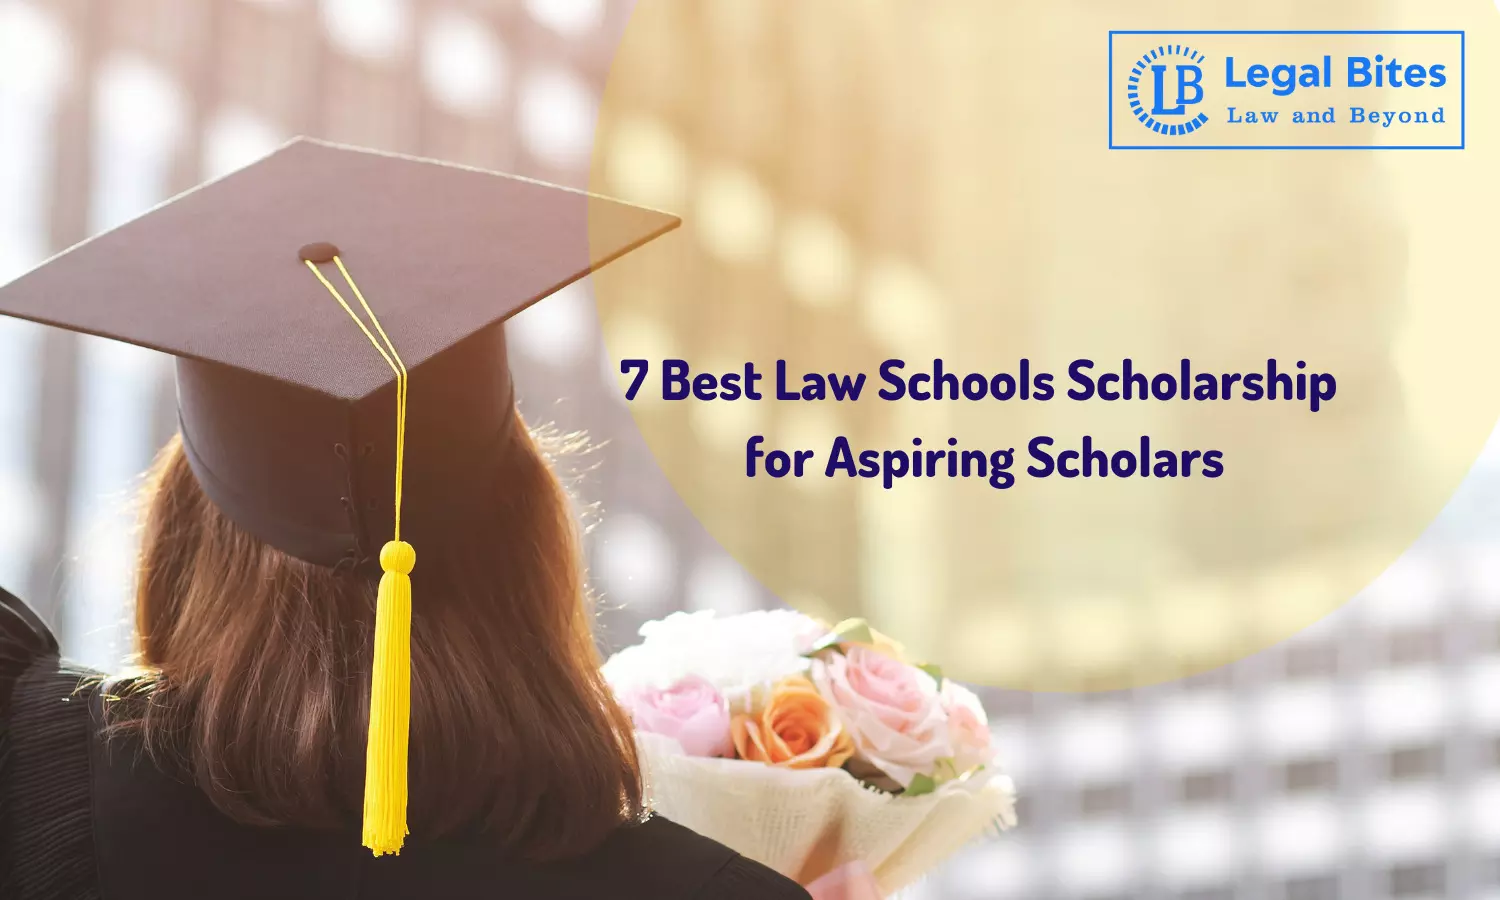 7 Best Law Schools Scholarship for Aspiring Scholars